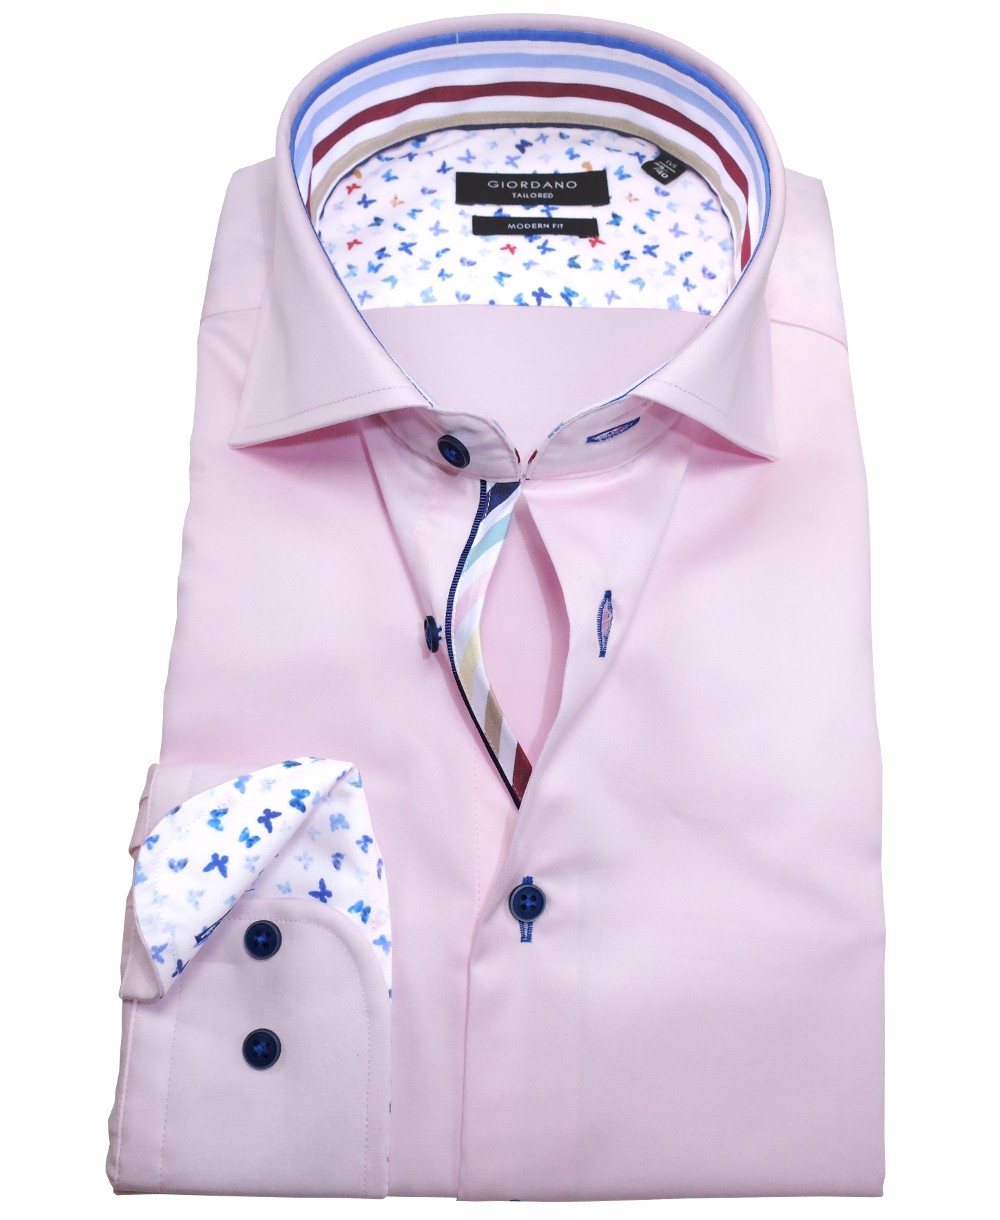 Giordano Langarmhemd Modern Fit rosa mit weiss bunten Patches - Hochwertige  Herrenmode führender Marken zu fairen